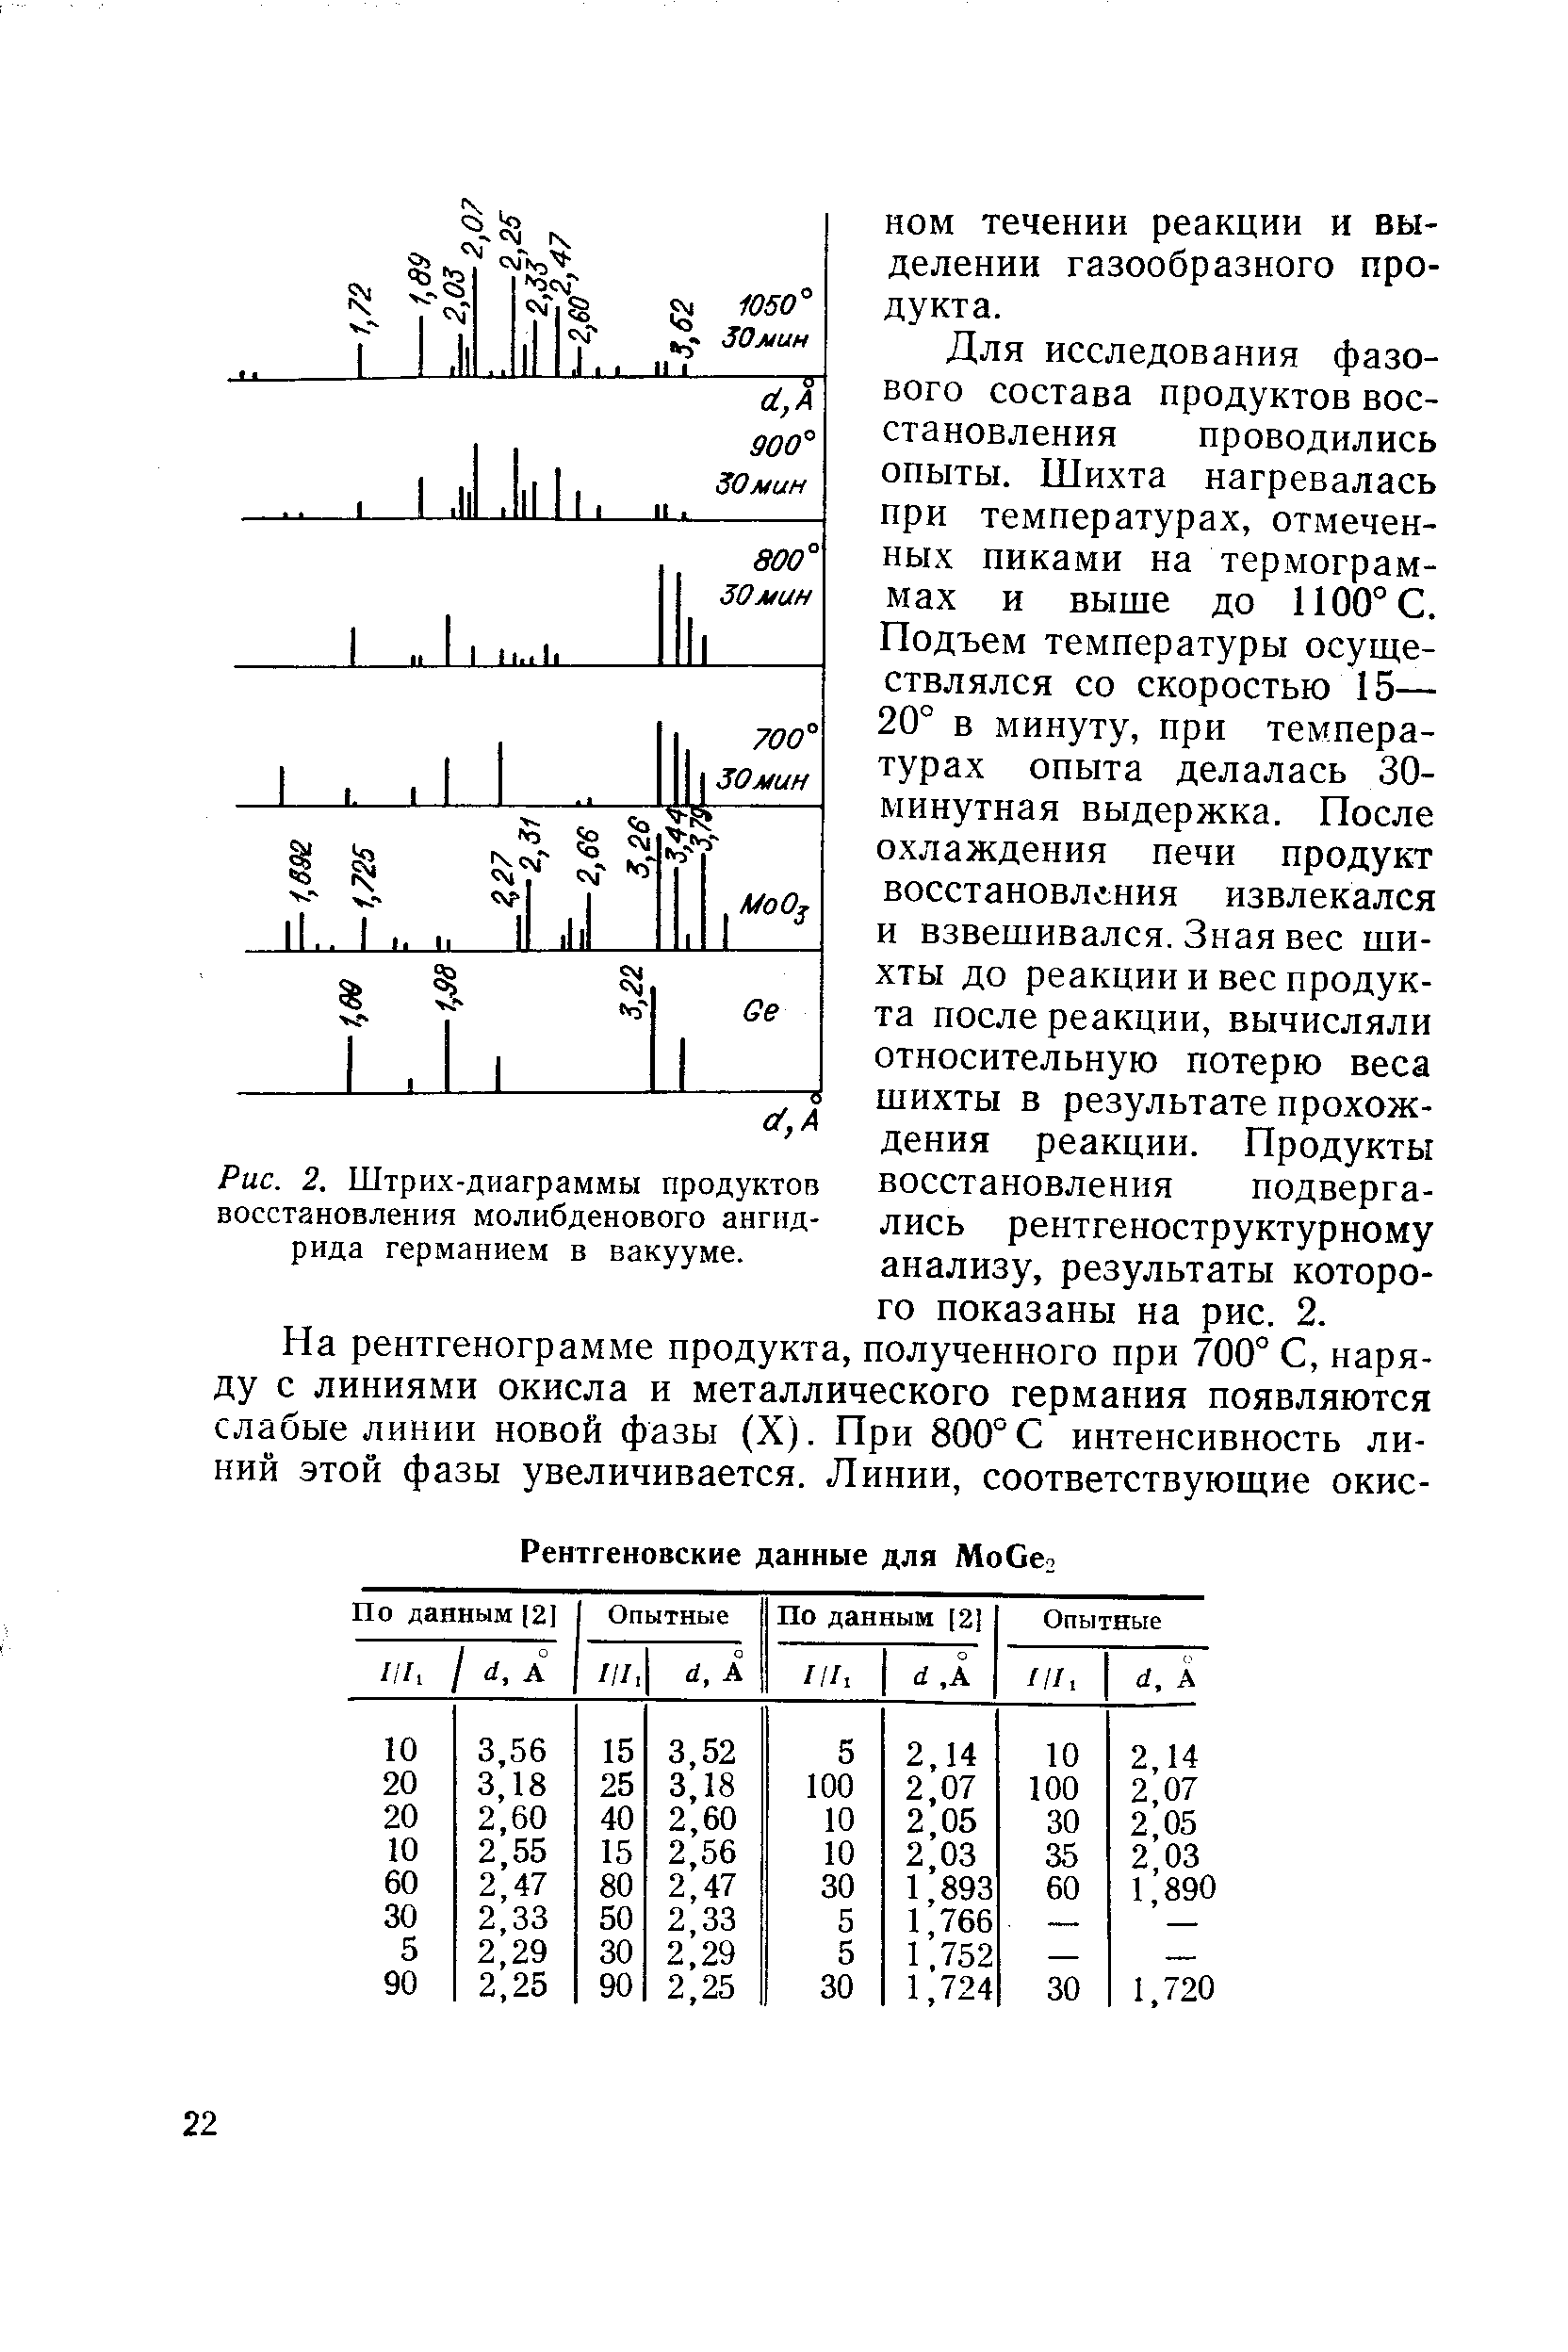 Рис. 2. Штрих-диаграммы продуктов восстановления молибденового ангидрида германием в вакууме.
